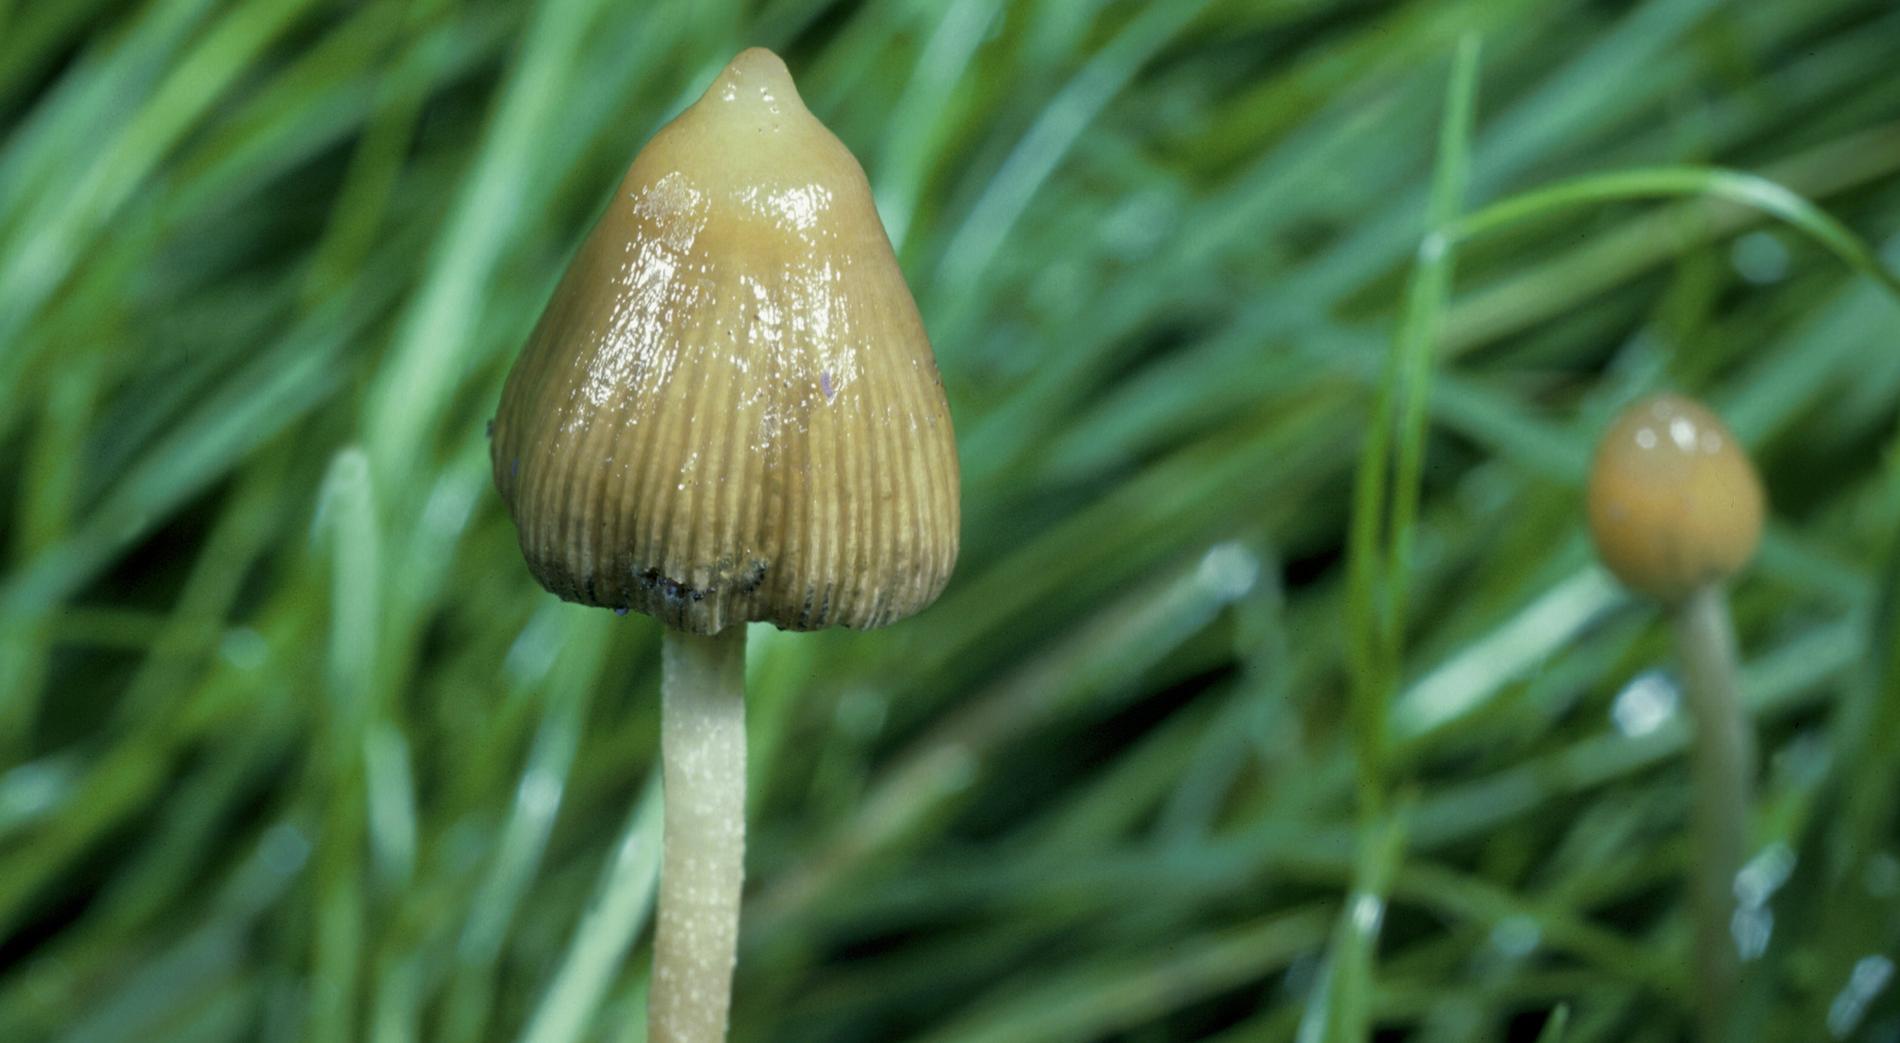 Toppslätskivlingen, som finns i nästan hela Sverige, är en av de svampar som innehåller psilocybin. Det är dock olagligt att plocka, odla eller inneha den. 